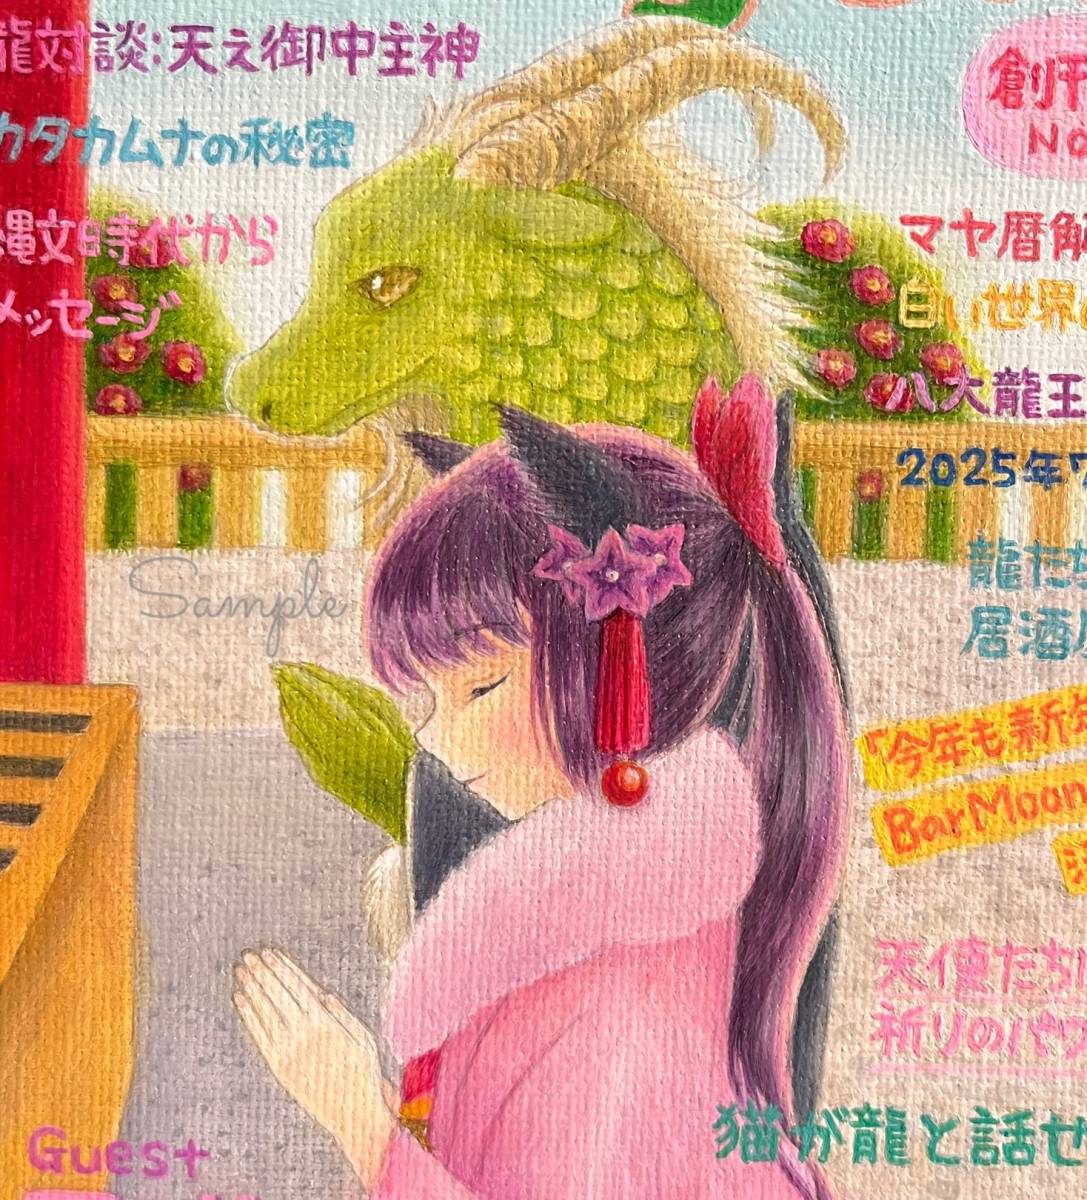 Ilustración original dibujada a mano ☆ Ilustración de portada del número mensual de enero de Dragon, historietas, productos de anime, ilustración dibujada a mano